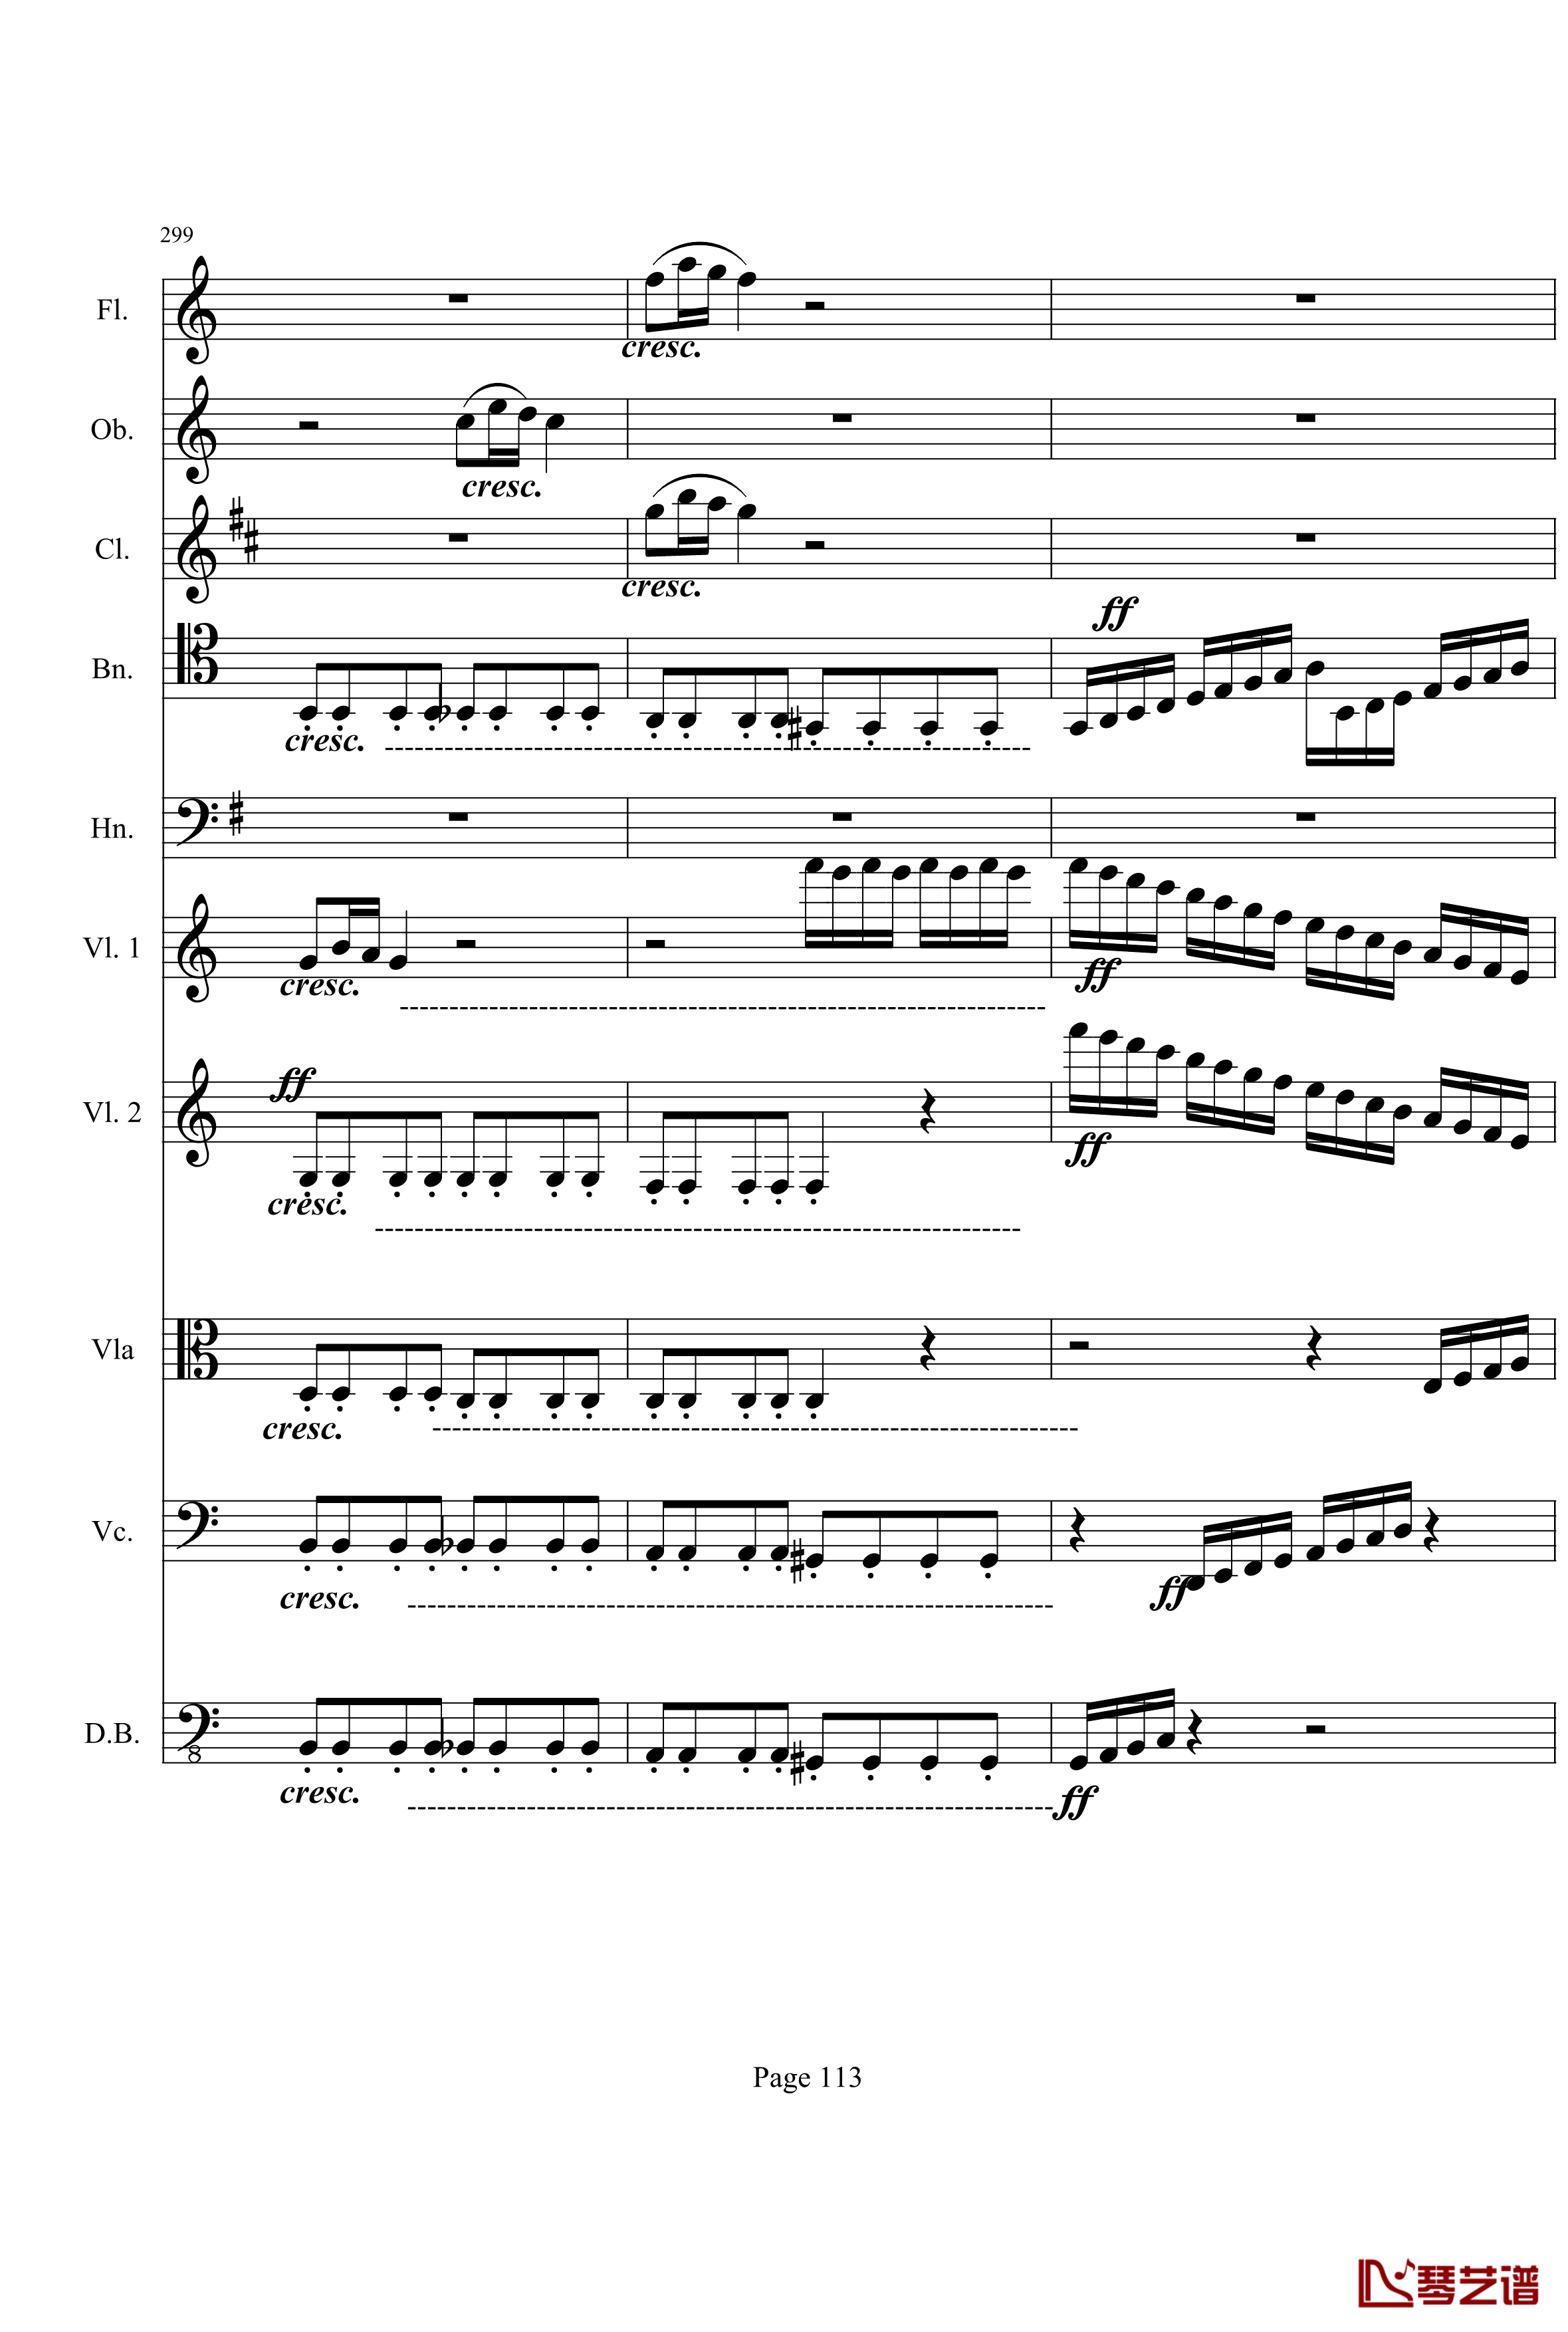 奏鸣曲之交响钢琴谱-第21-Ⅰ-贝多芬-beethoven113